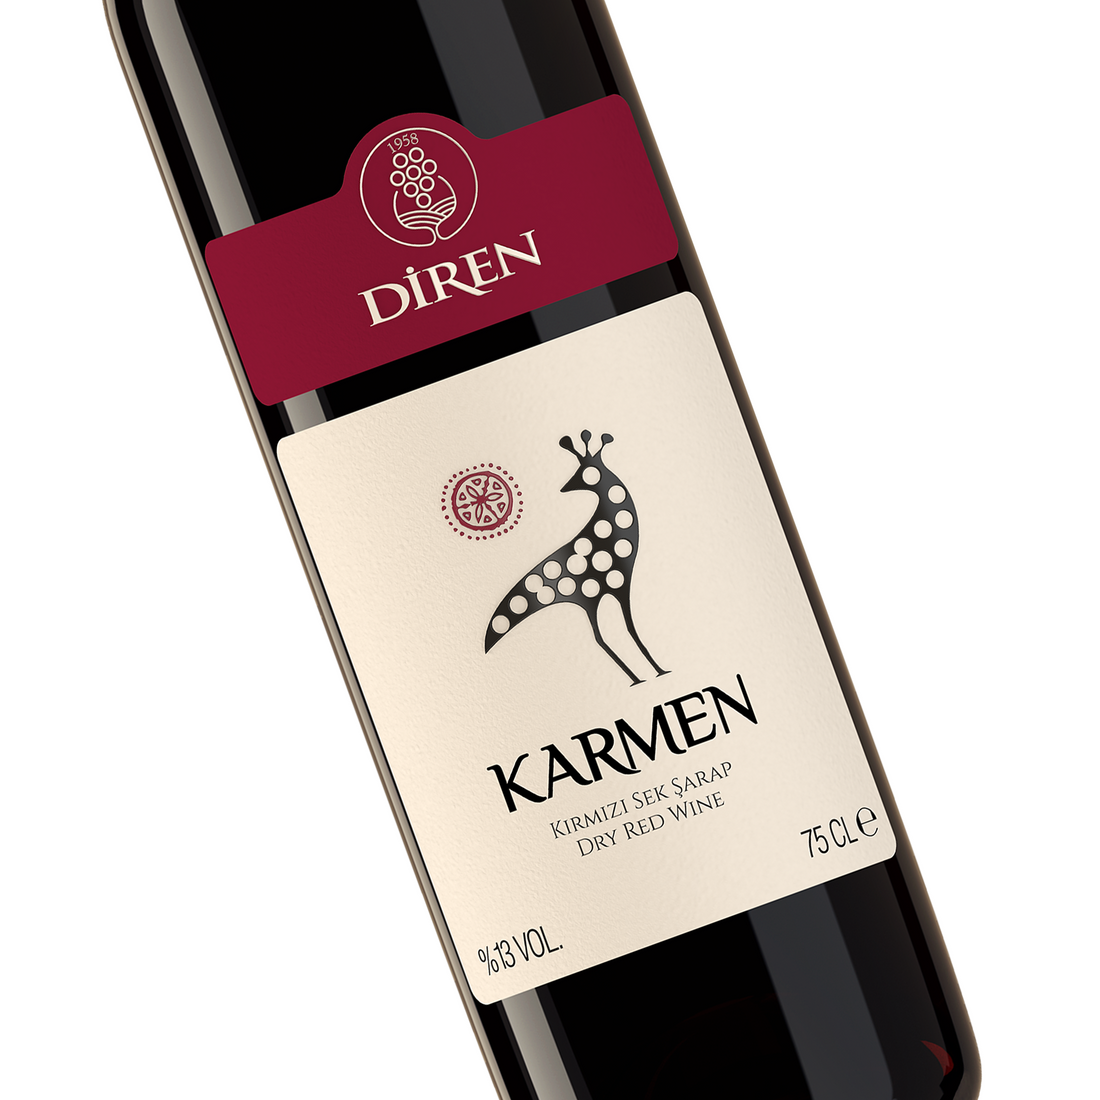 ディレン カルメン・レッド 750ml 辛口 トルコ 赤ワイン | Diren Karmen Kirmizi Sek Sarap | Dry Red Wine